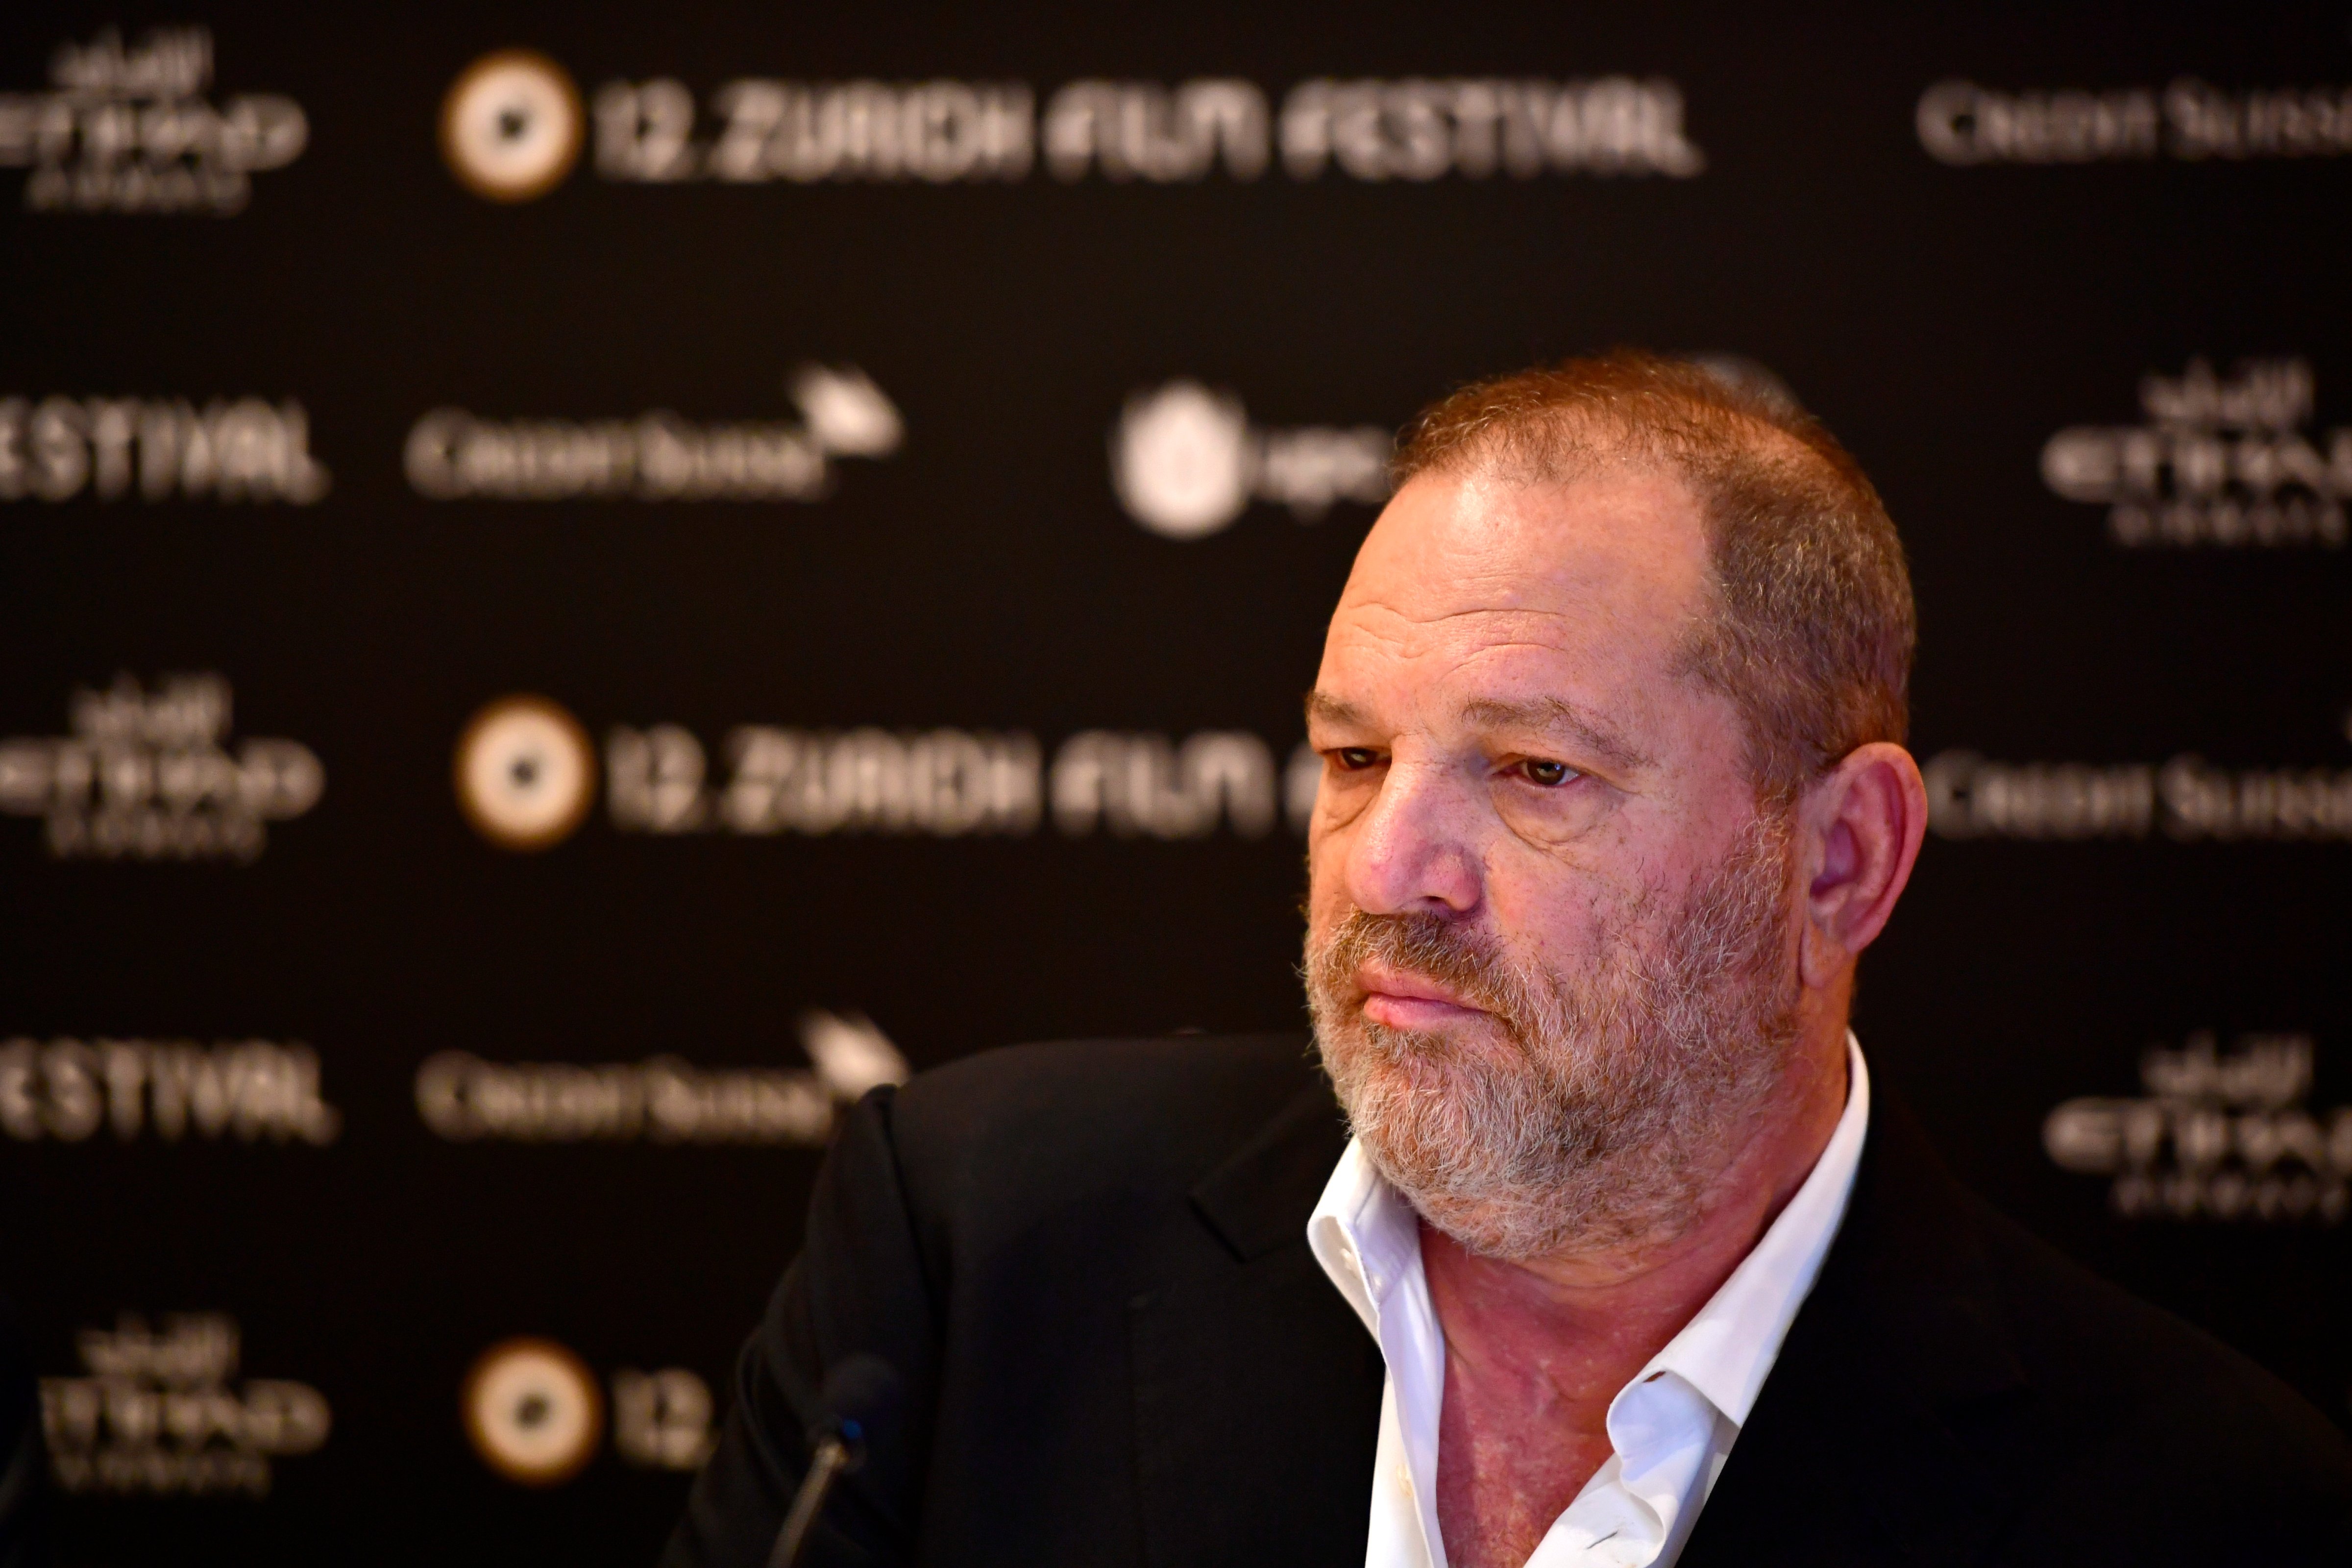 Harvey Weinstein speaks at the 'Lion' press junket during the 12th Zurich Film Festival on September 22, 2016 in Zurich, Switzerland. (Alexander Koerner—Getty Images)